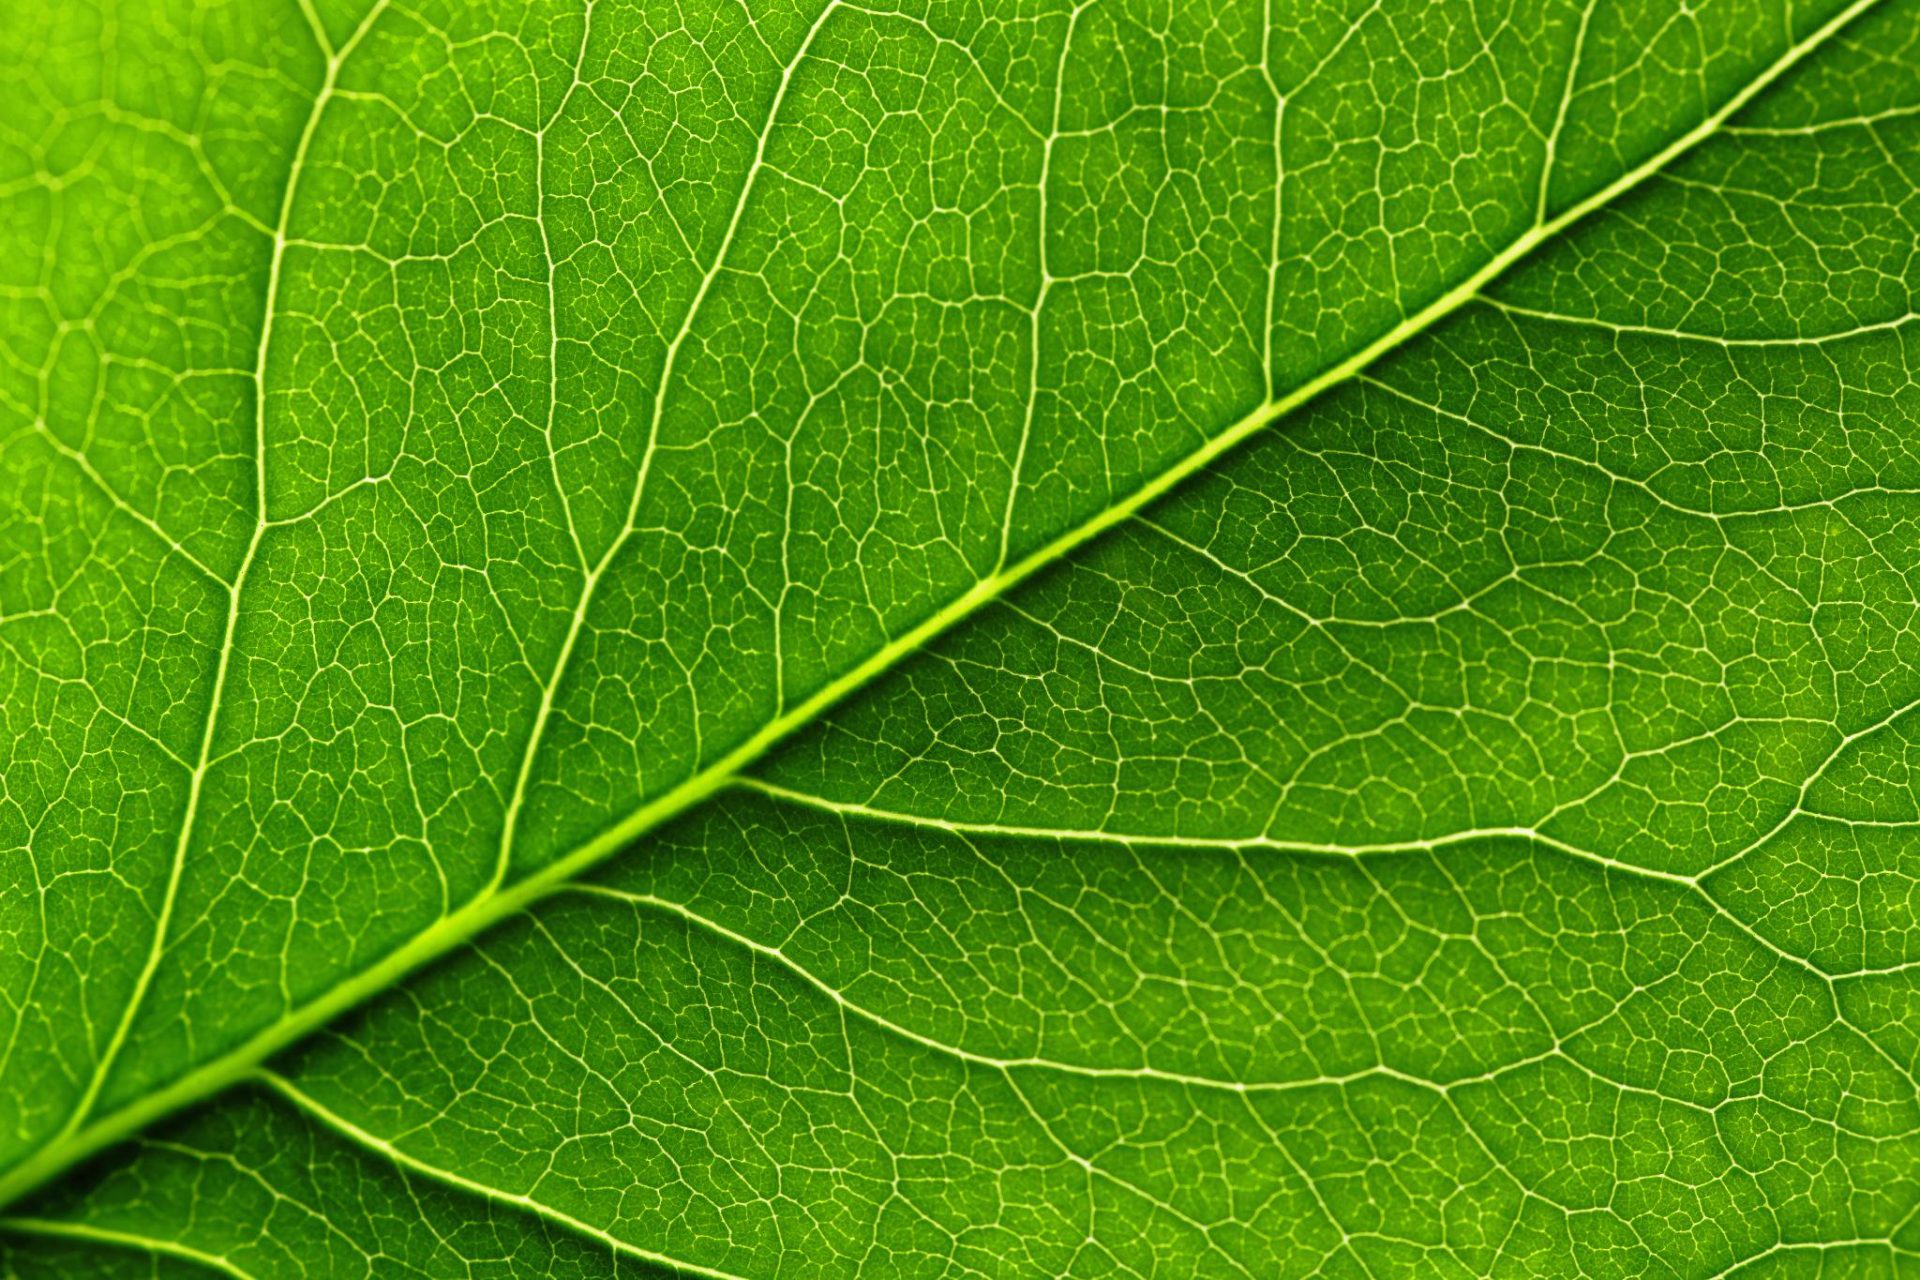 2-cnnct leaf